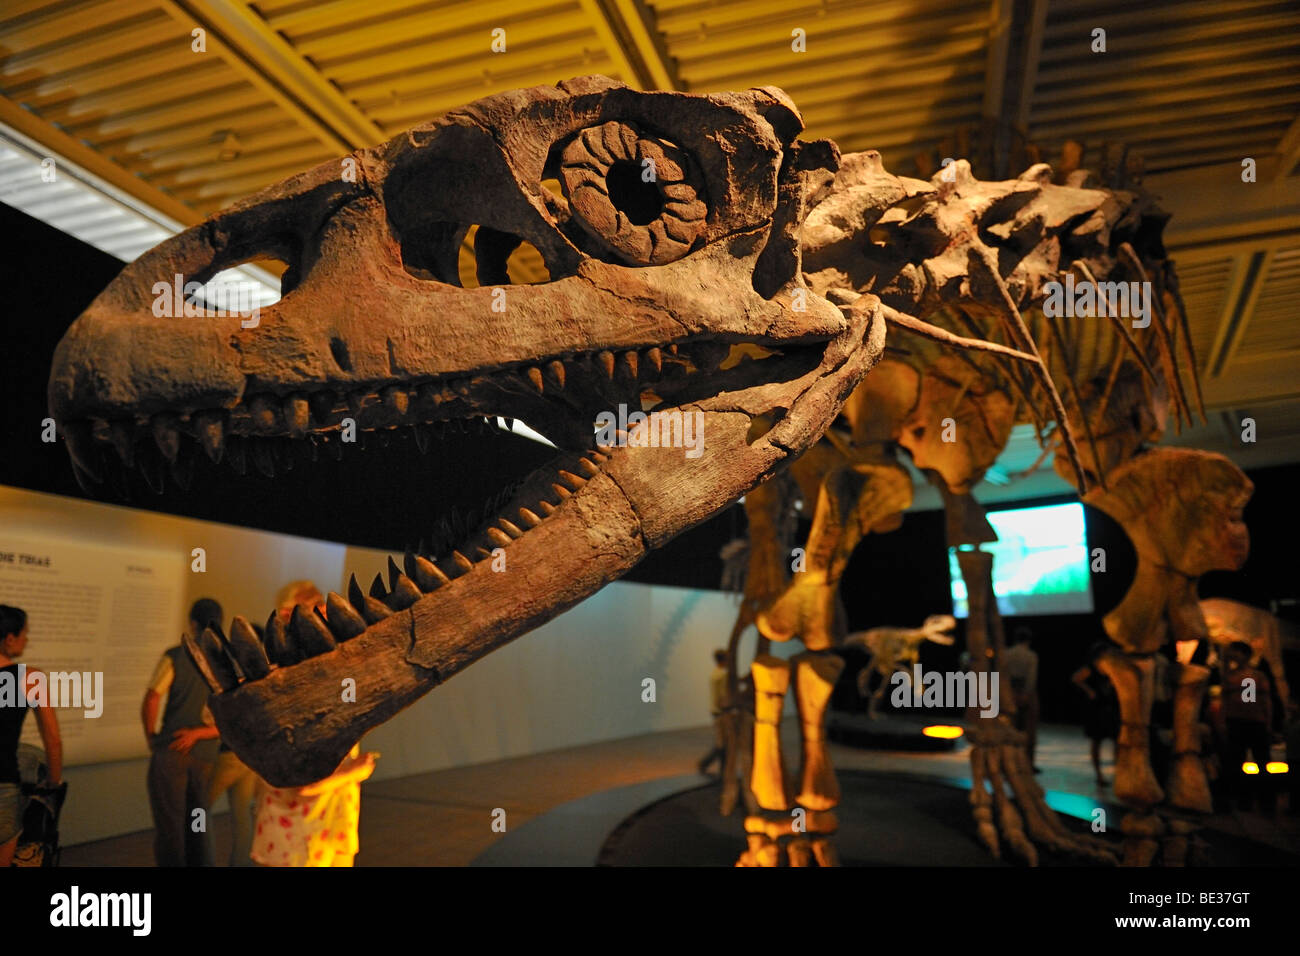 Brachytrachelopan Mesai, Pflanzenfresser, lebte vor 145 Millionen Jahren Riesen Dinosaurier von Argentinien Ausstellung, Lokschuppen, locomoti Stockfoto